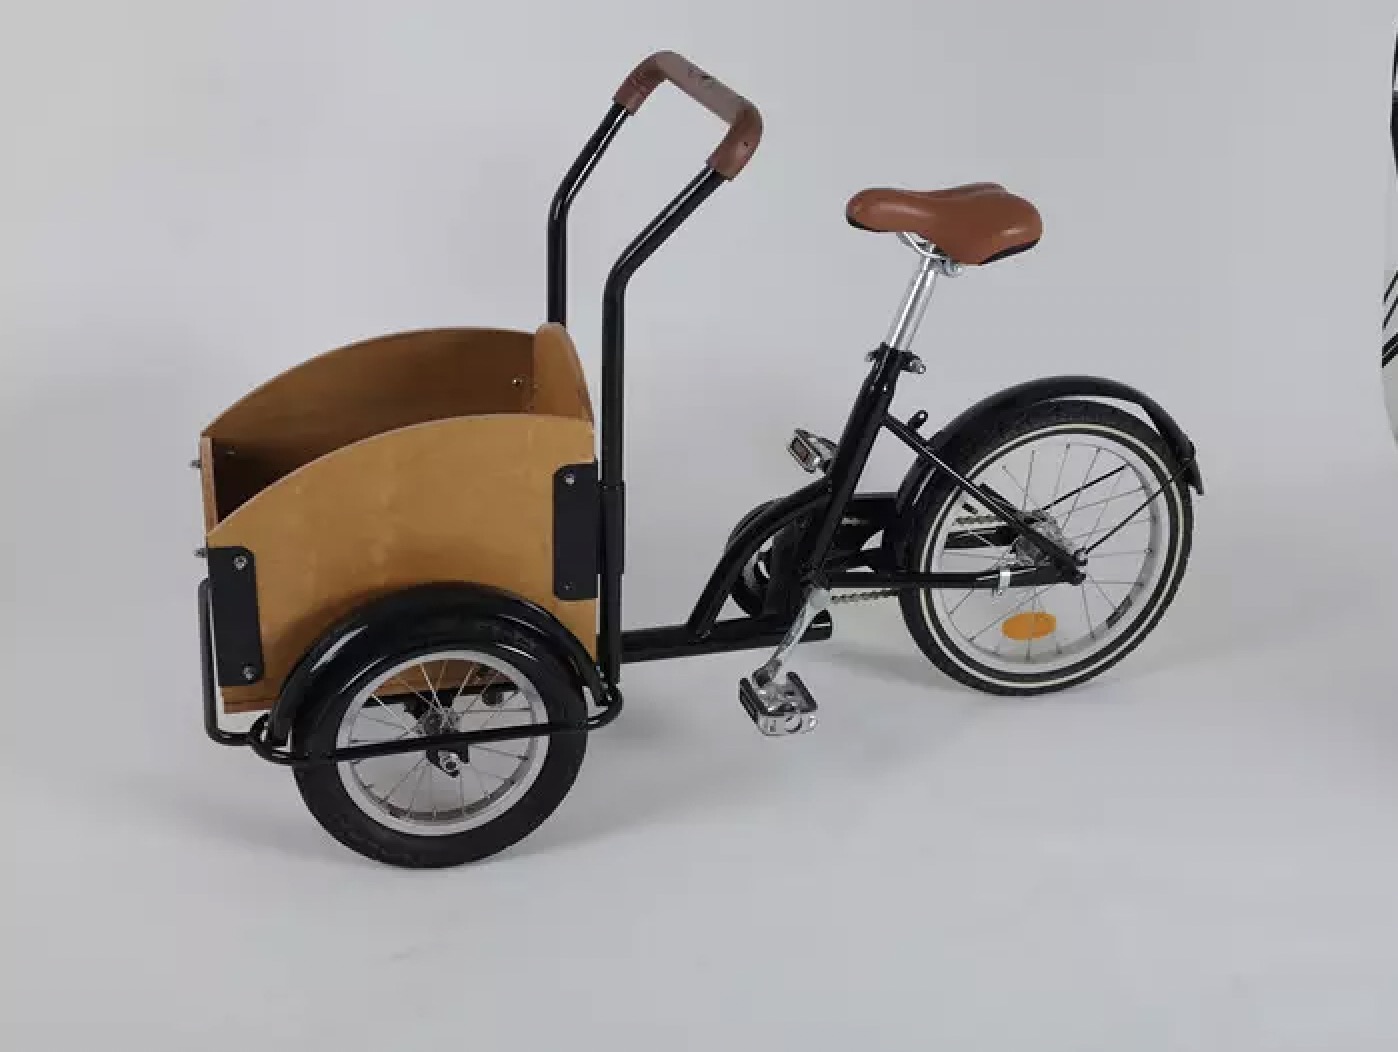 европейски склад детски велосипед 3 колела товарен велосипед за деца играчки триколка баланс велосипед